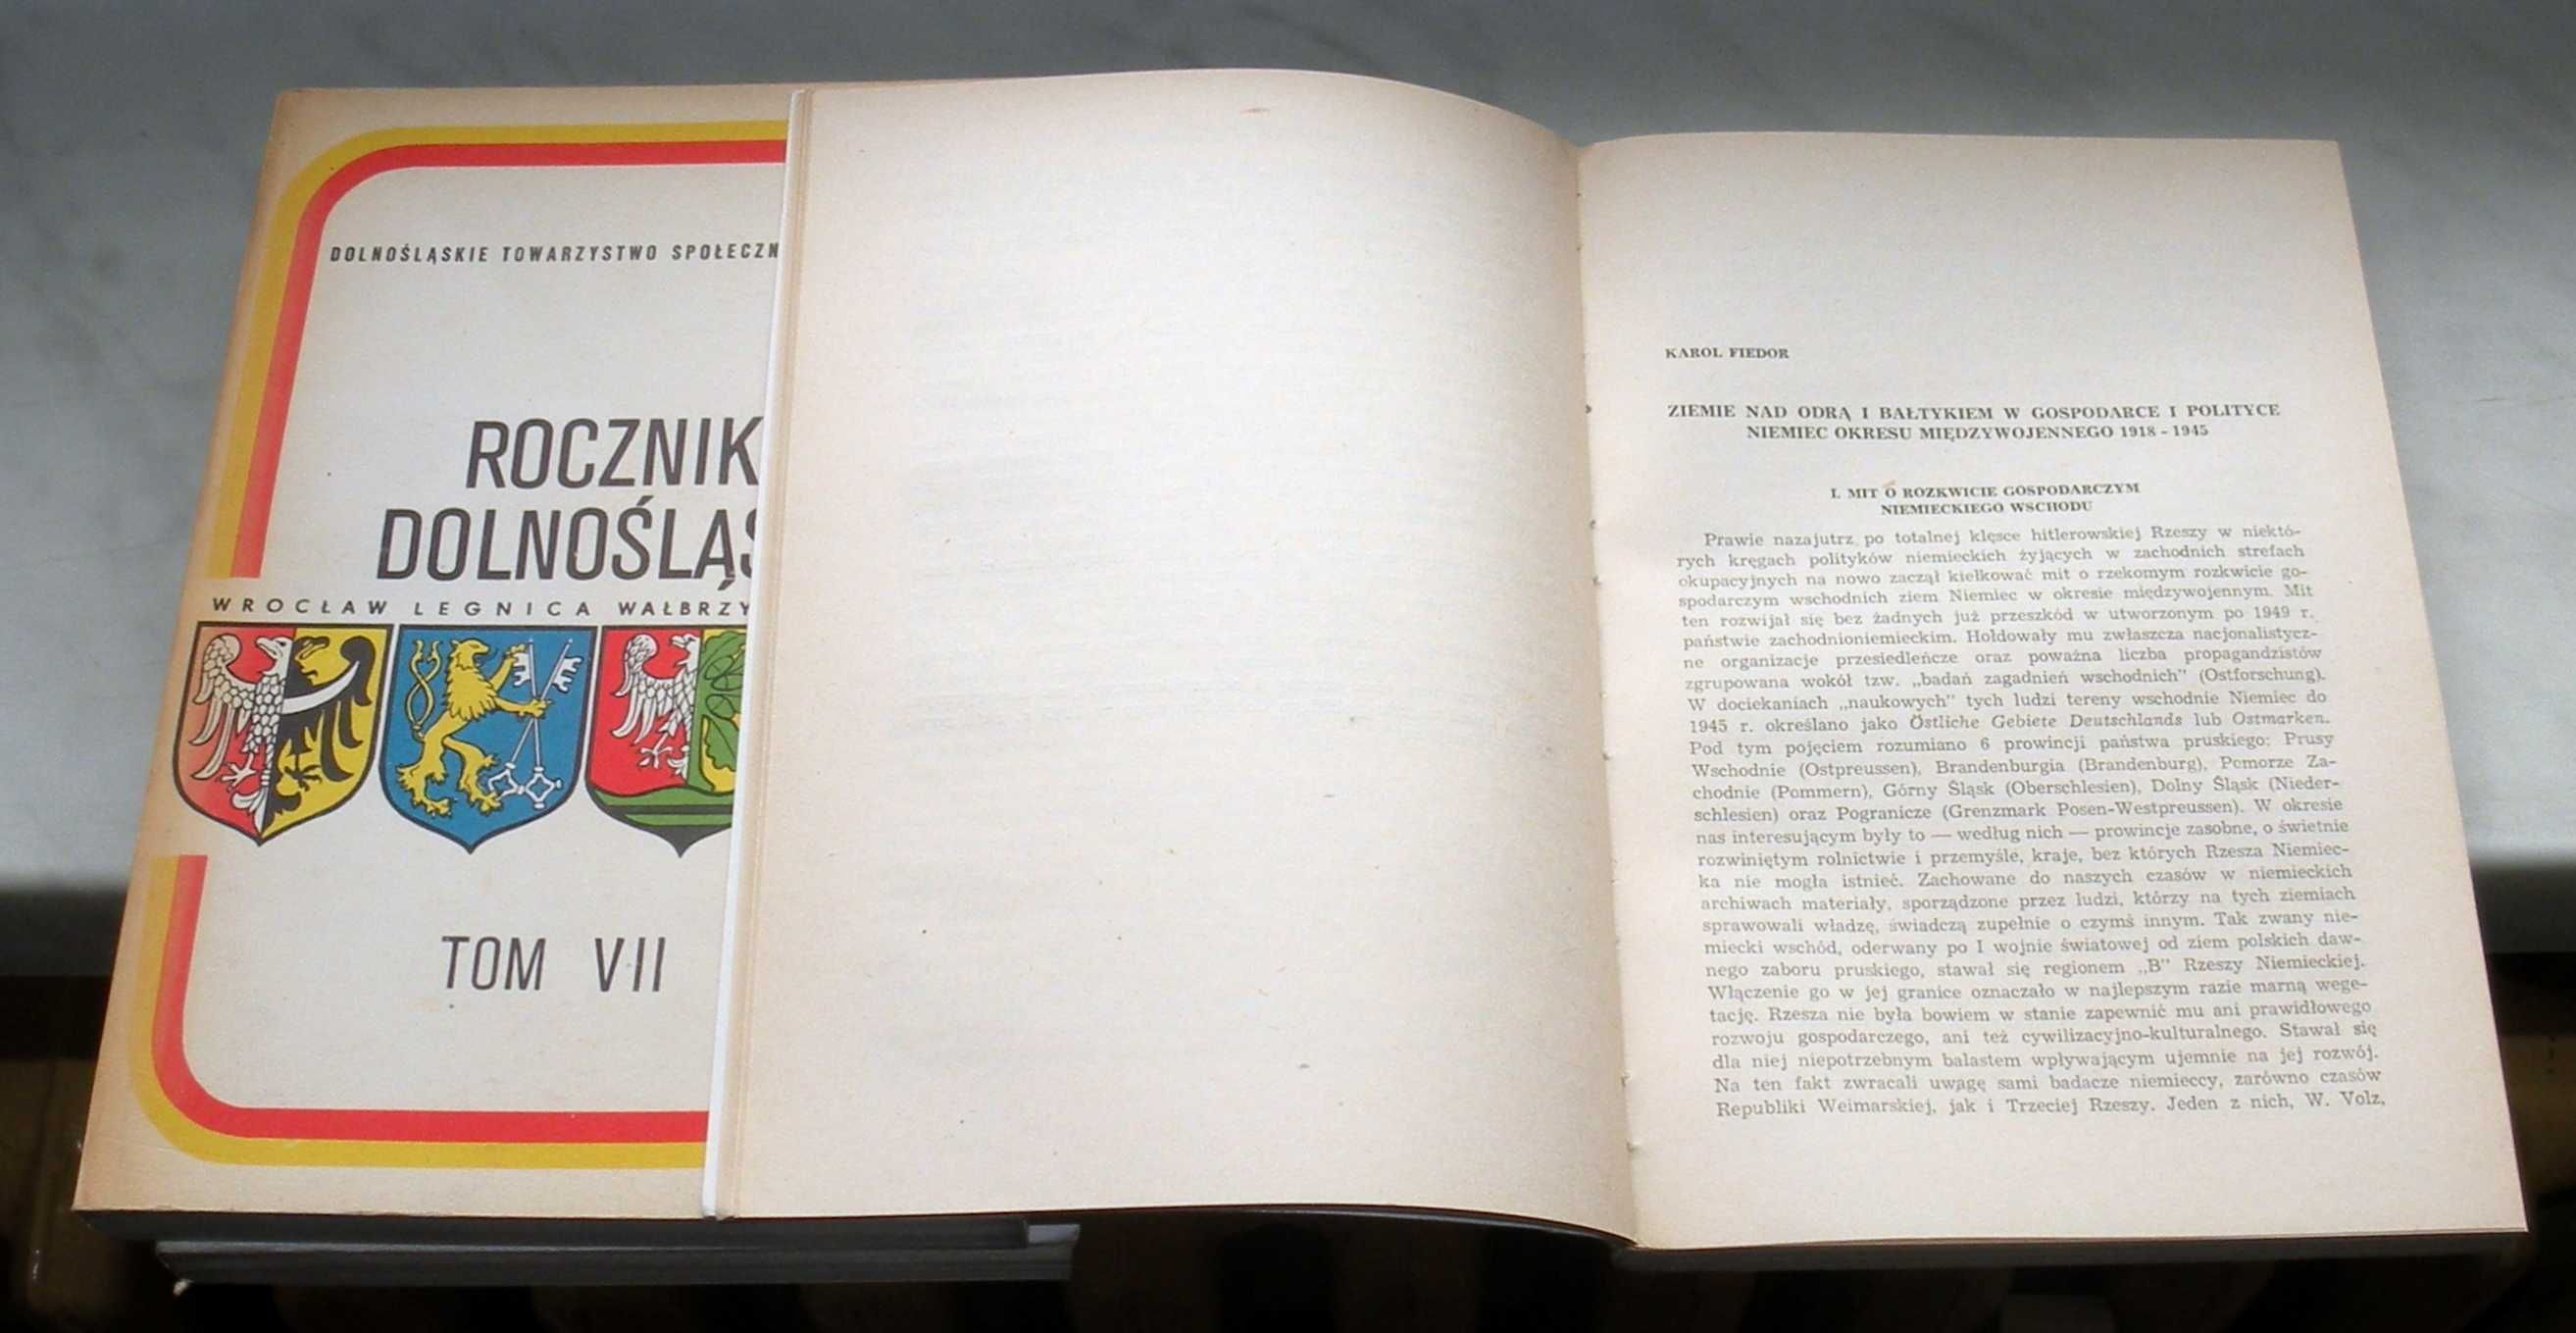 Rocznik Dolnośląski, 3 tomy, T. VII (1980), IX (1985), X (1987)